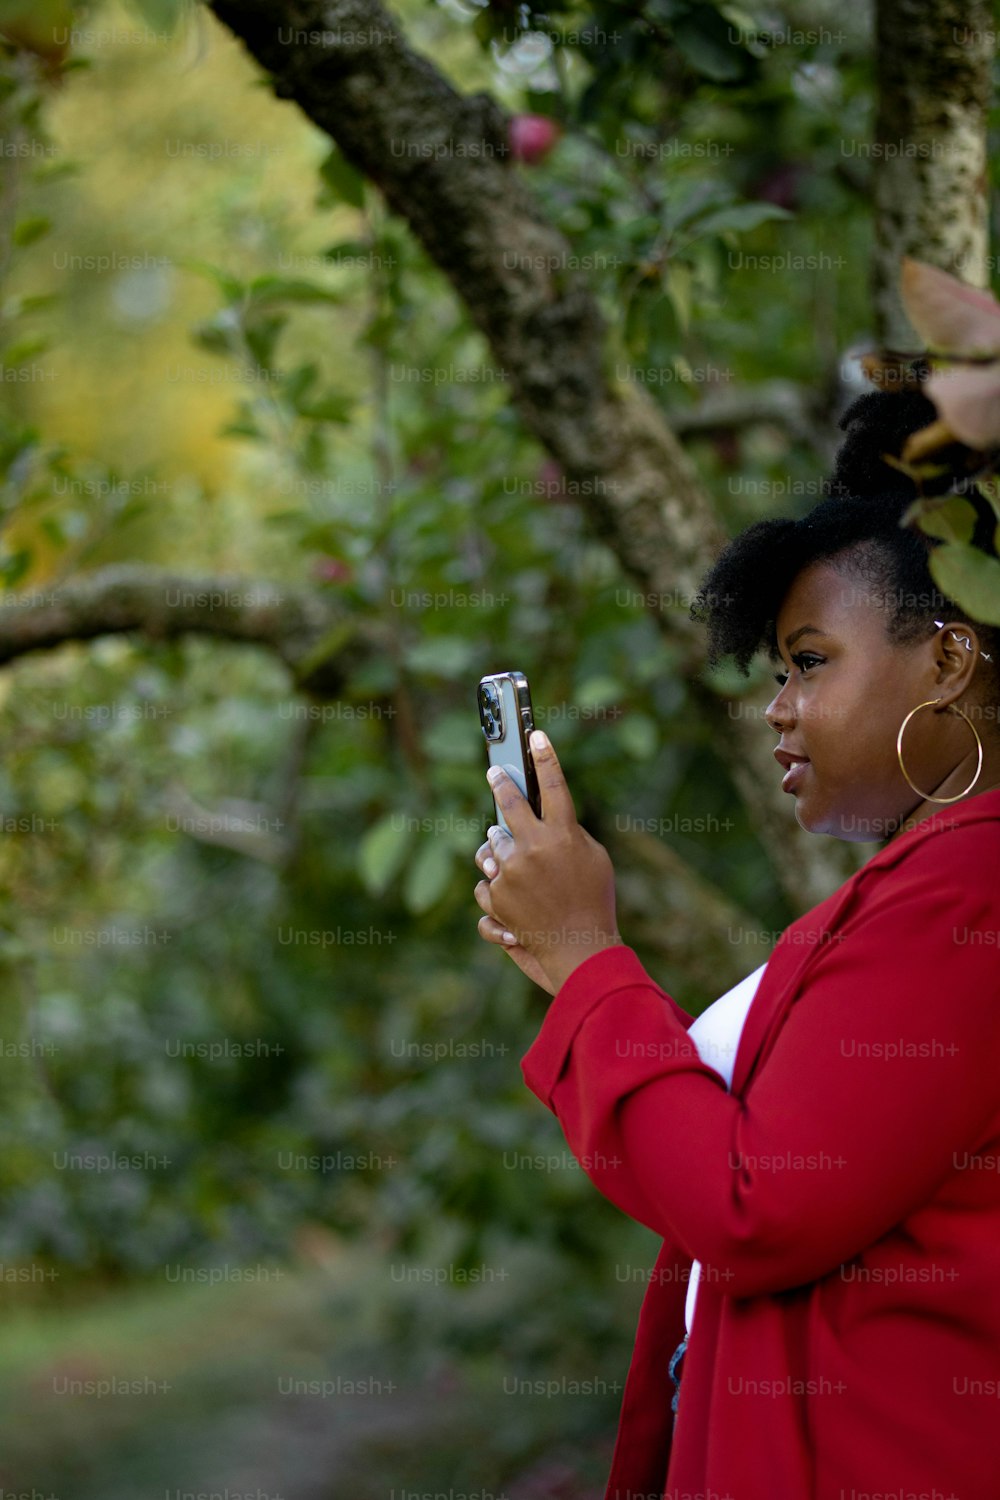 Una mujer parada frente a un árbol sosteniendo un teléfono celular